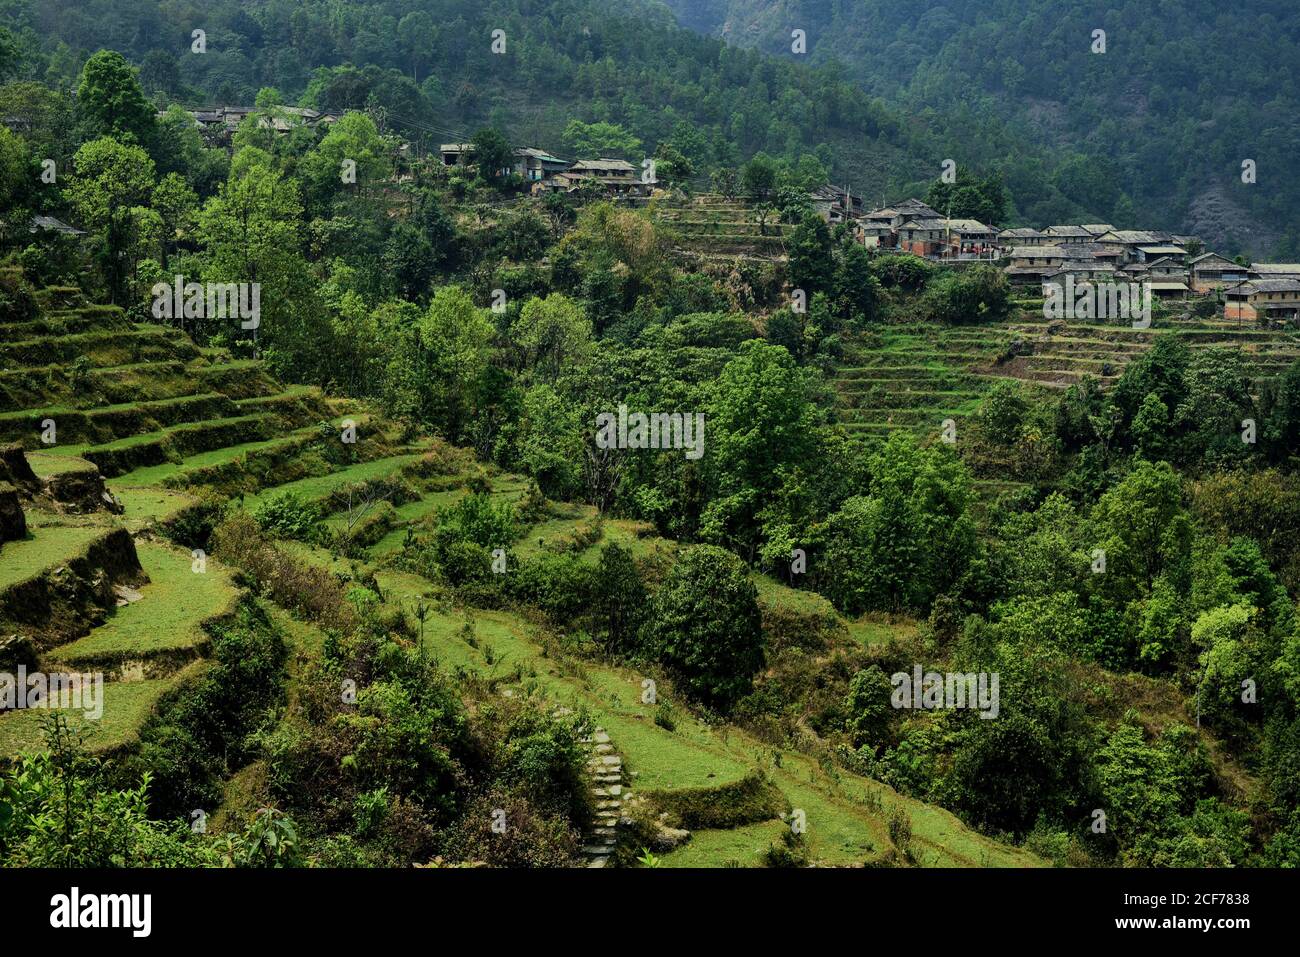 Am Hang des Panchase Mountain liegt Sidhane landwirtschaftlichen Dorf, wo die Gemeinschaft auch Ökotourismus betreibt. Gandaki Pradesh Provinz, Nepal. Stockfoto